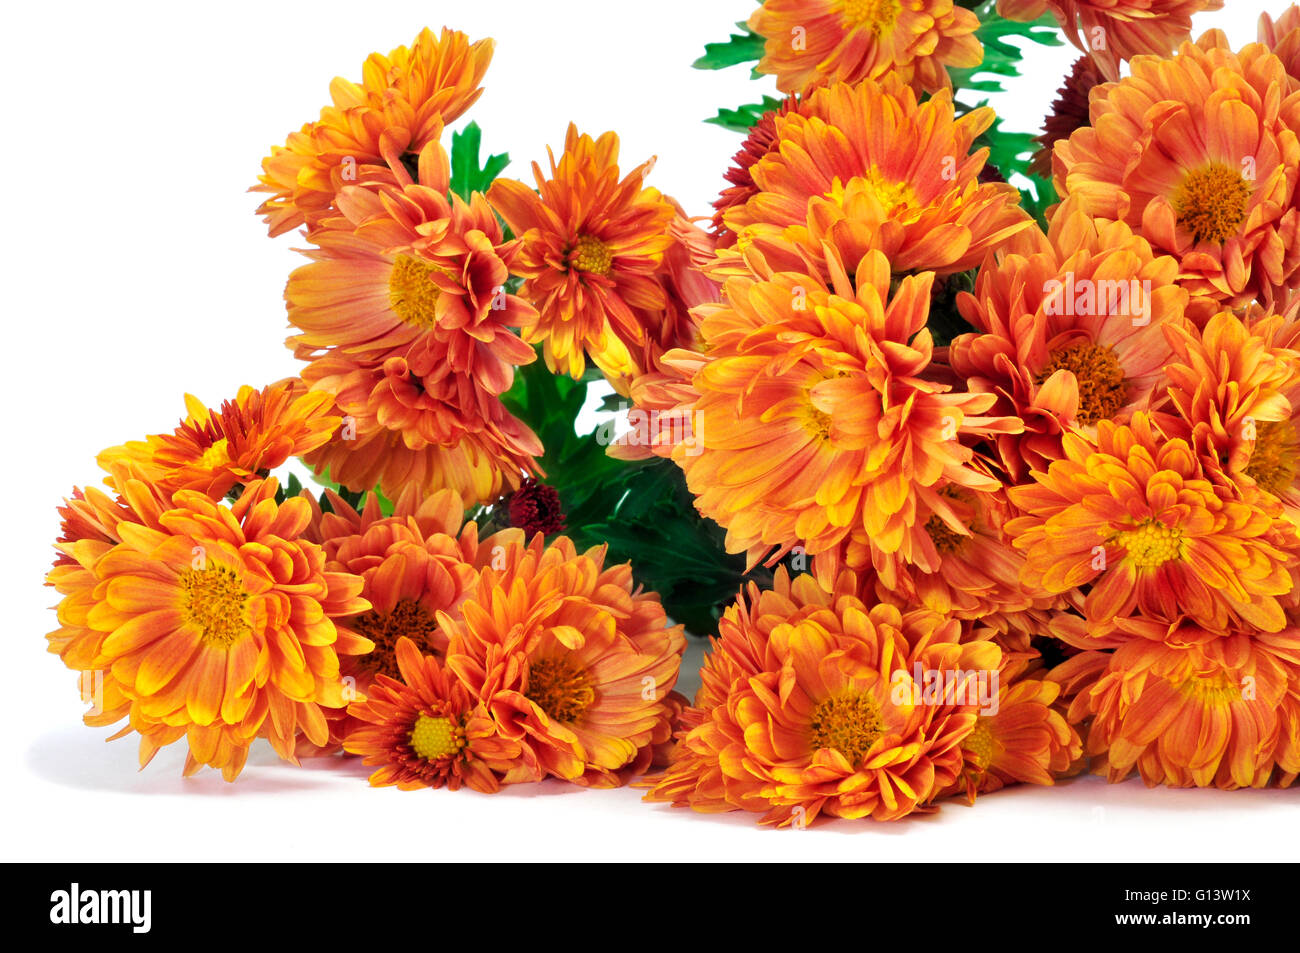 closeup of some orange daisies on a white background Stock Photo